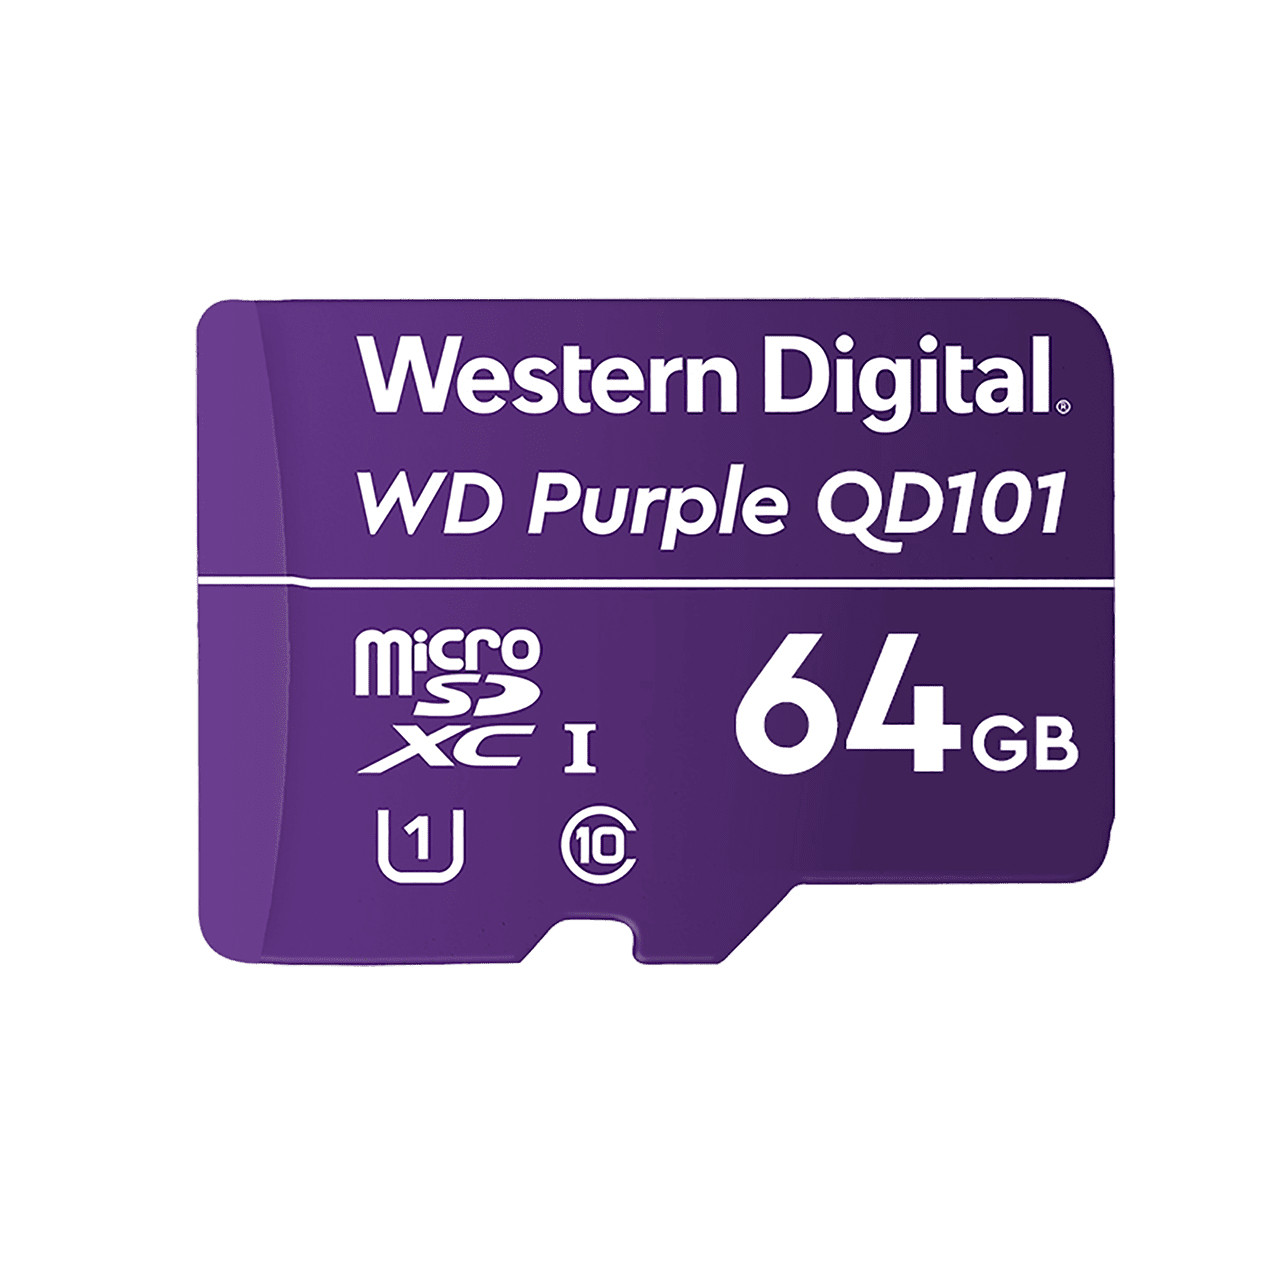 WDD064G1P0C | Western Digital | WD Purple SC QD101 64 GB MicroSDXC Class 10